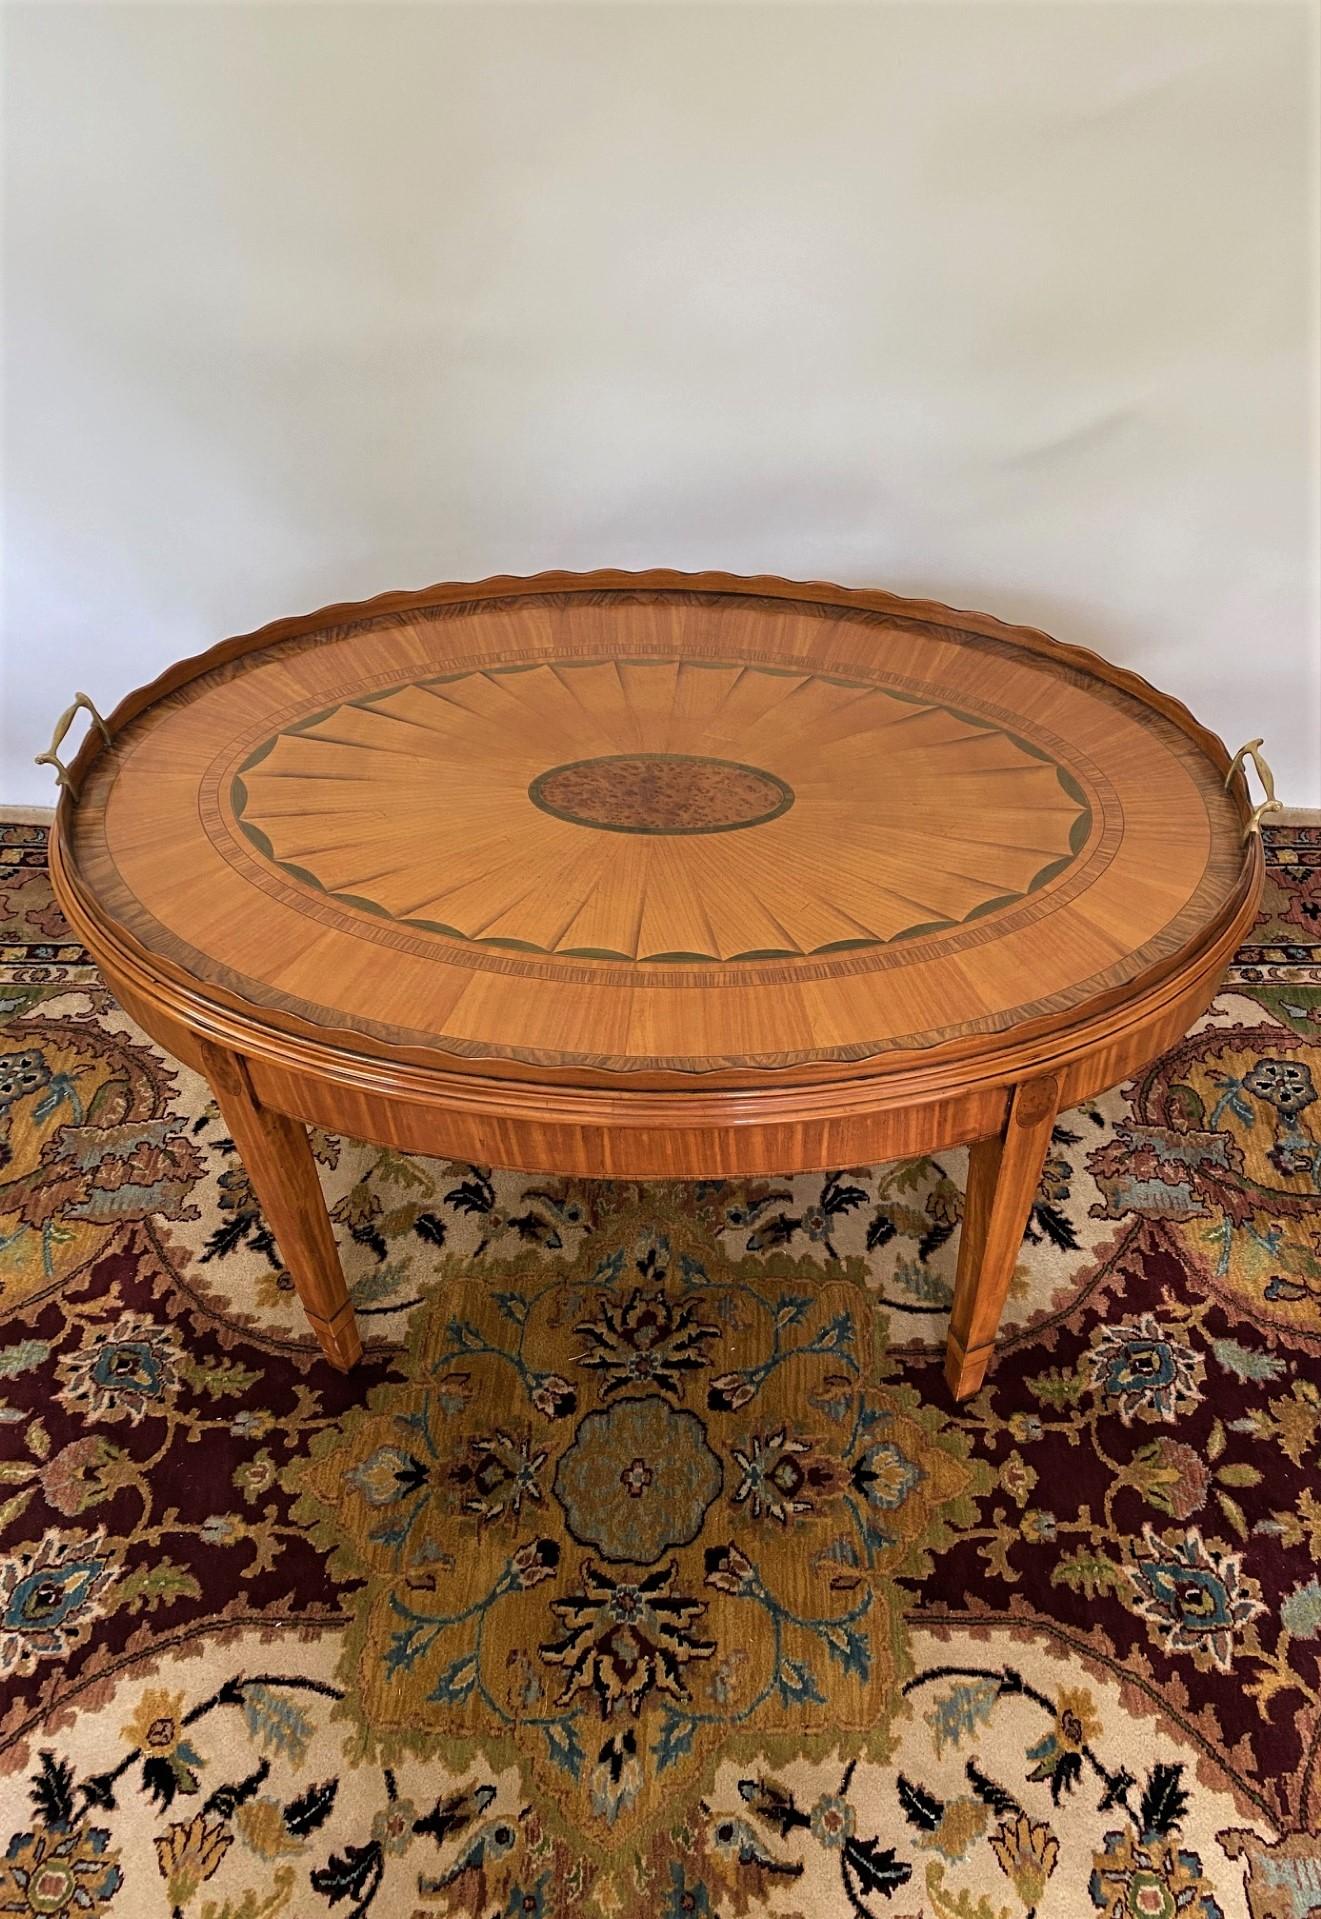 Dieser reiche und königliche Tabletttisch von Wood & Hogan wurde von einem Originaltablett aus dem 18. Jahrhundert inspiriert, das sich in der persönlichen Sammlung eines prominenten, international bekannten britischen Antiquitätenhändlers befindet.